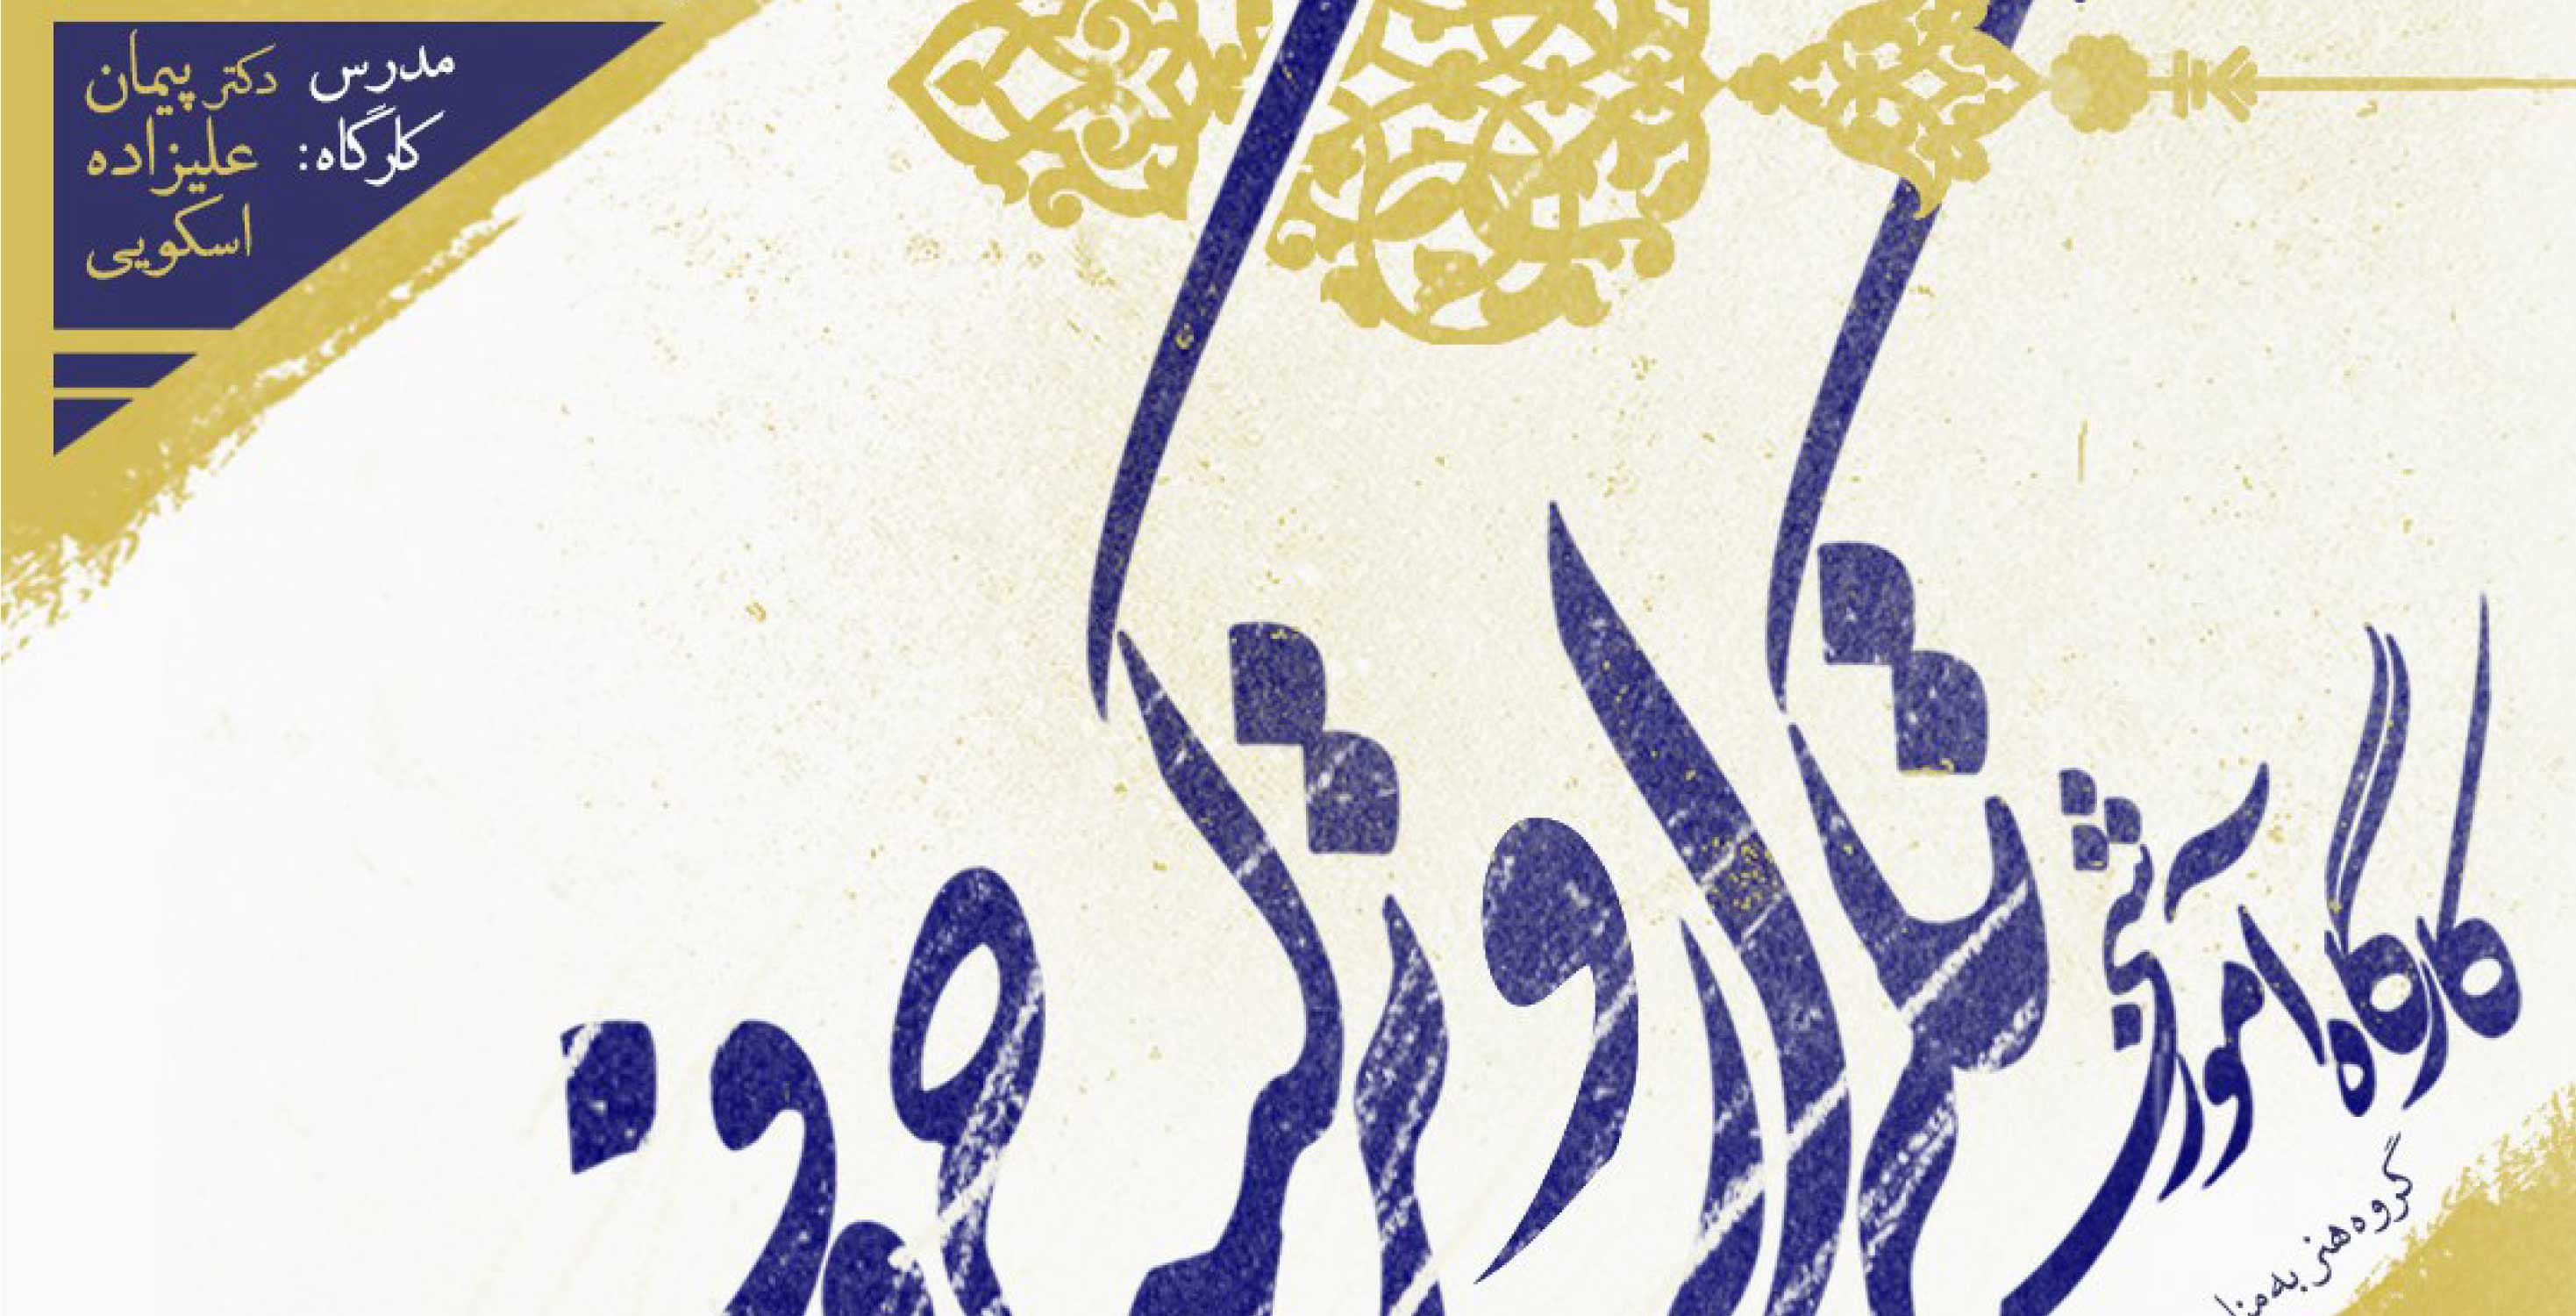 برگزاری کارگاه آموزشی تکرار و ترکیب حروف به مناسبت گرامیداشت هفته جهانی طراحی گرافیک در دانشکده هنر دانشگاه آزاد اسلامی واحد تهران جنوب